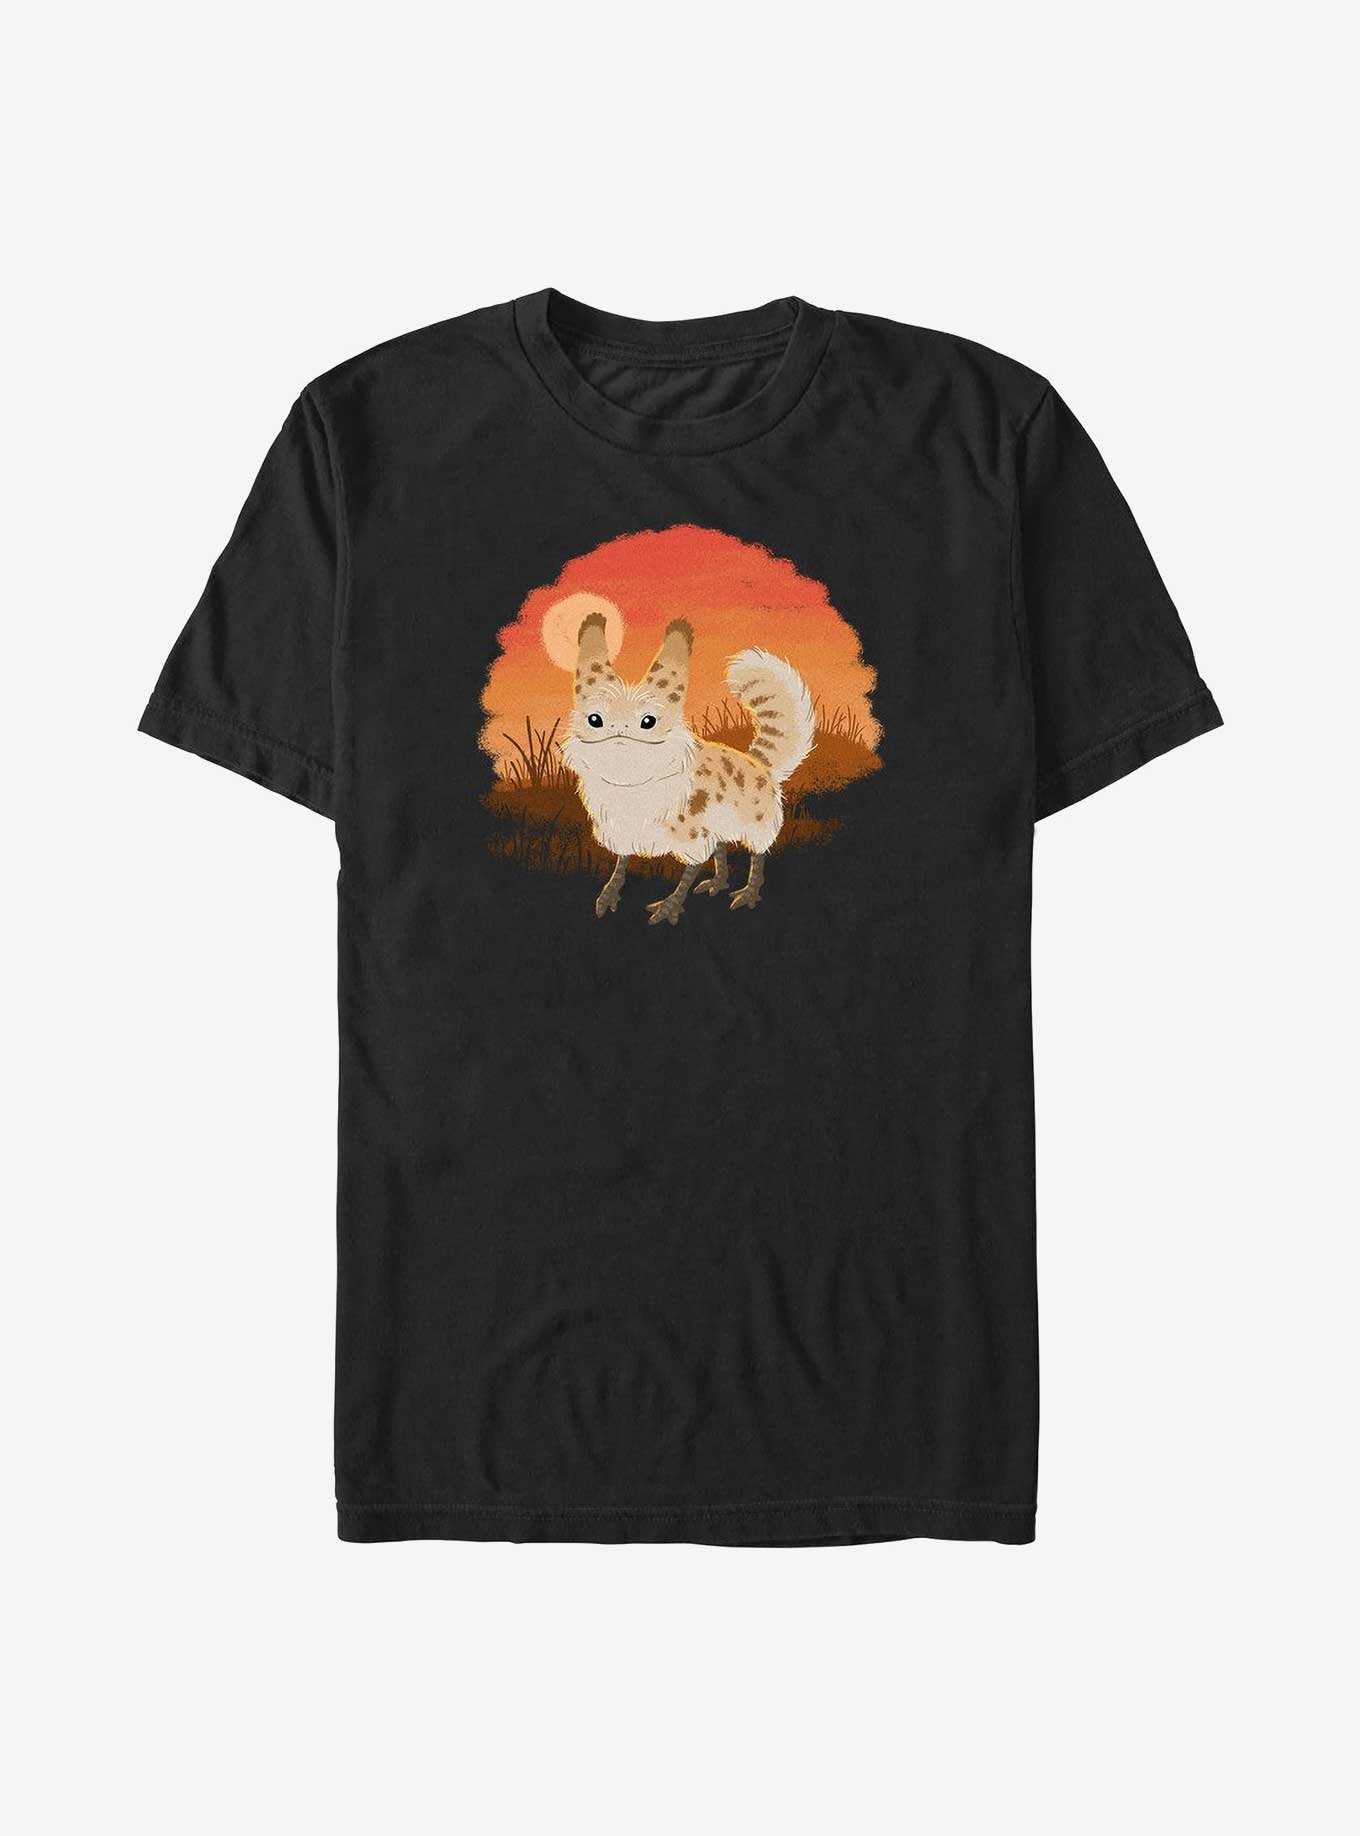 Star Wars Ahsoka Fluffy Loth-Cat Sunset T-Shirt, , hi-res